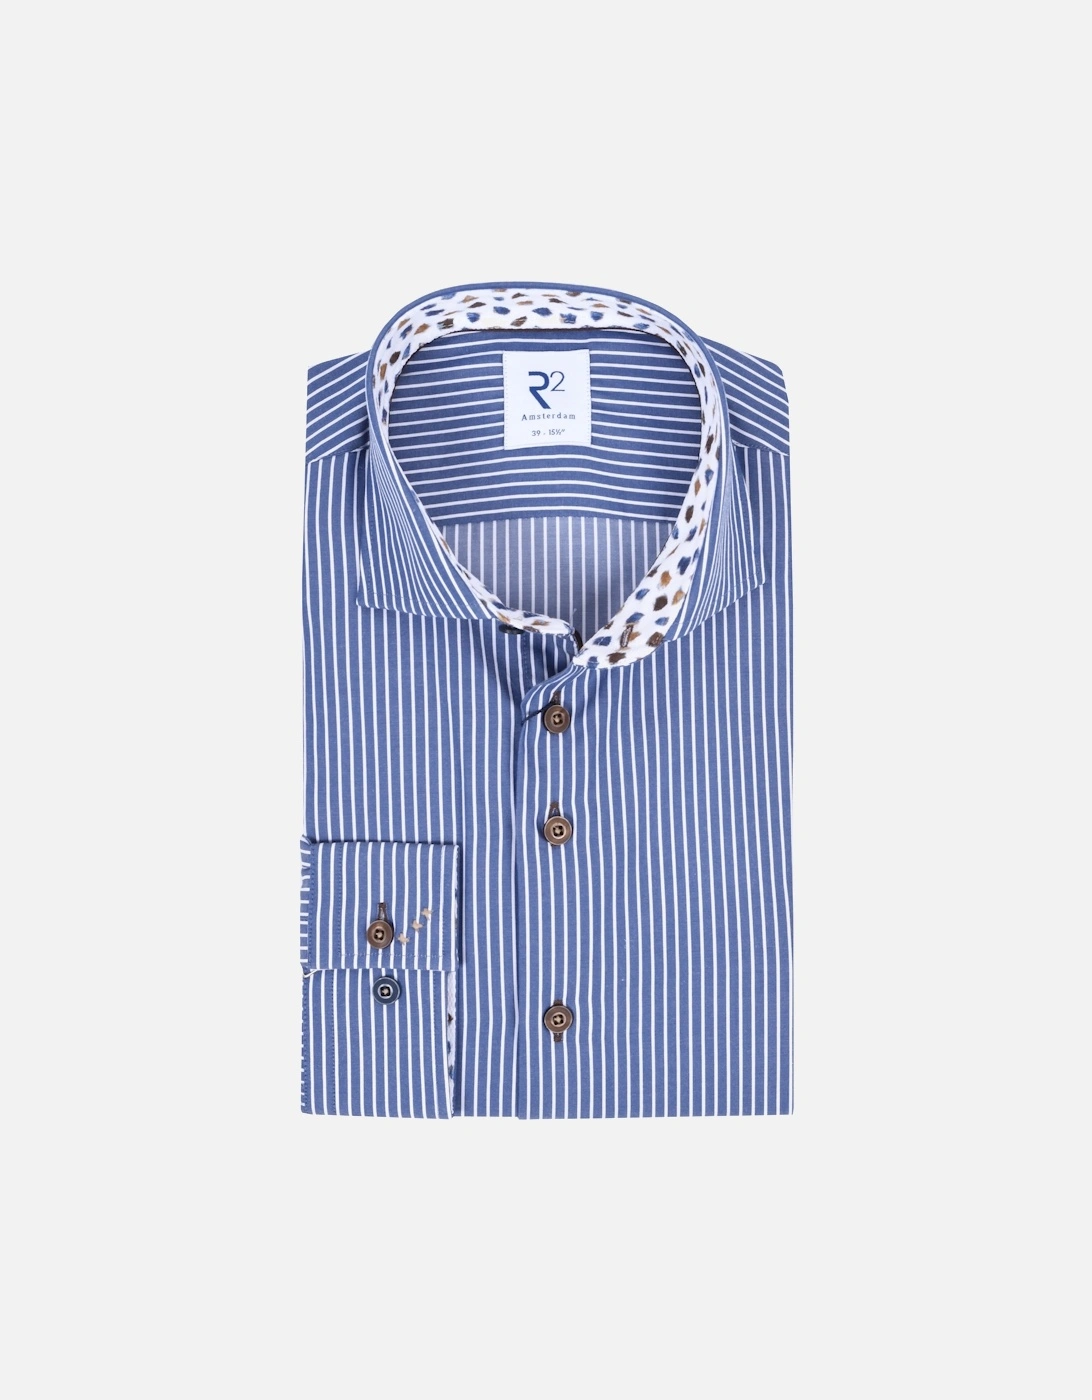 Cut Away Collar Shirt Navy/White Stripe, 5 of 4